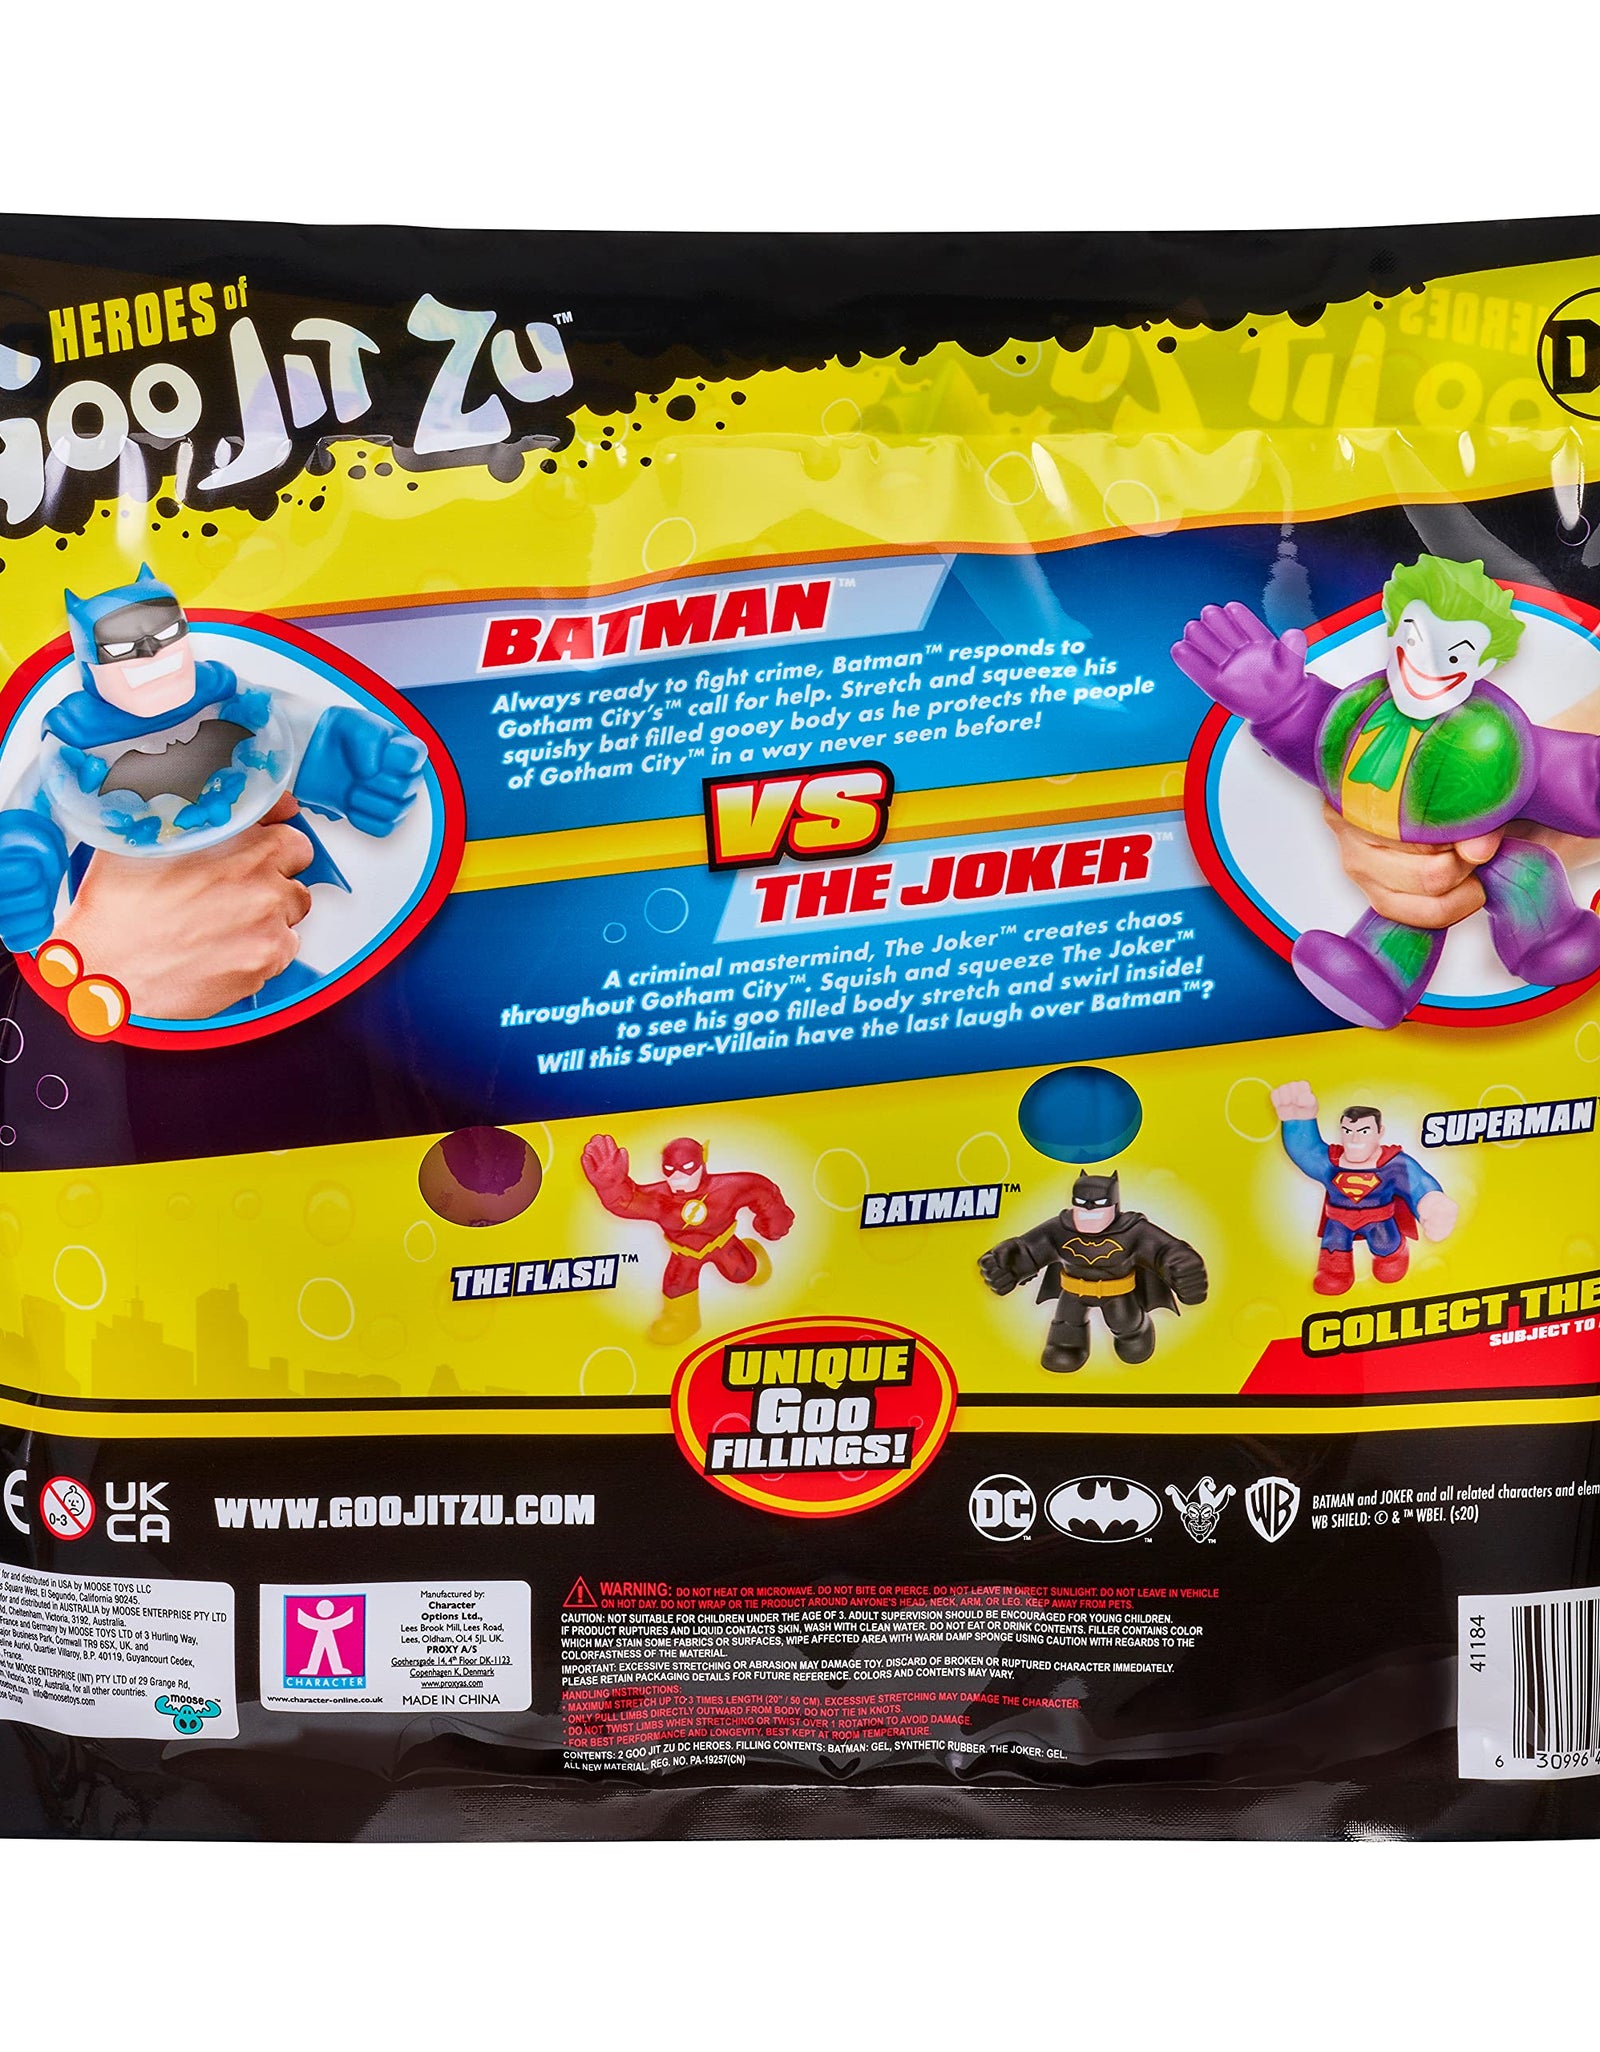 Heroes of Goo Jit Zu DC Versus Pack Batman vs Joker - Squishy, Stretchy, Gooey 2 Pack